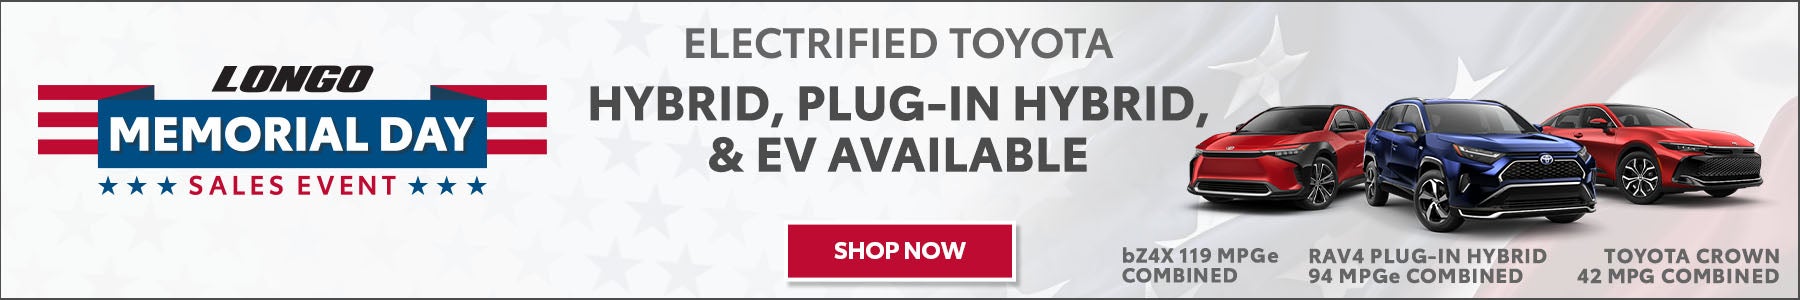 Electrified Toyota